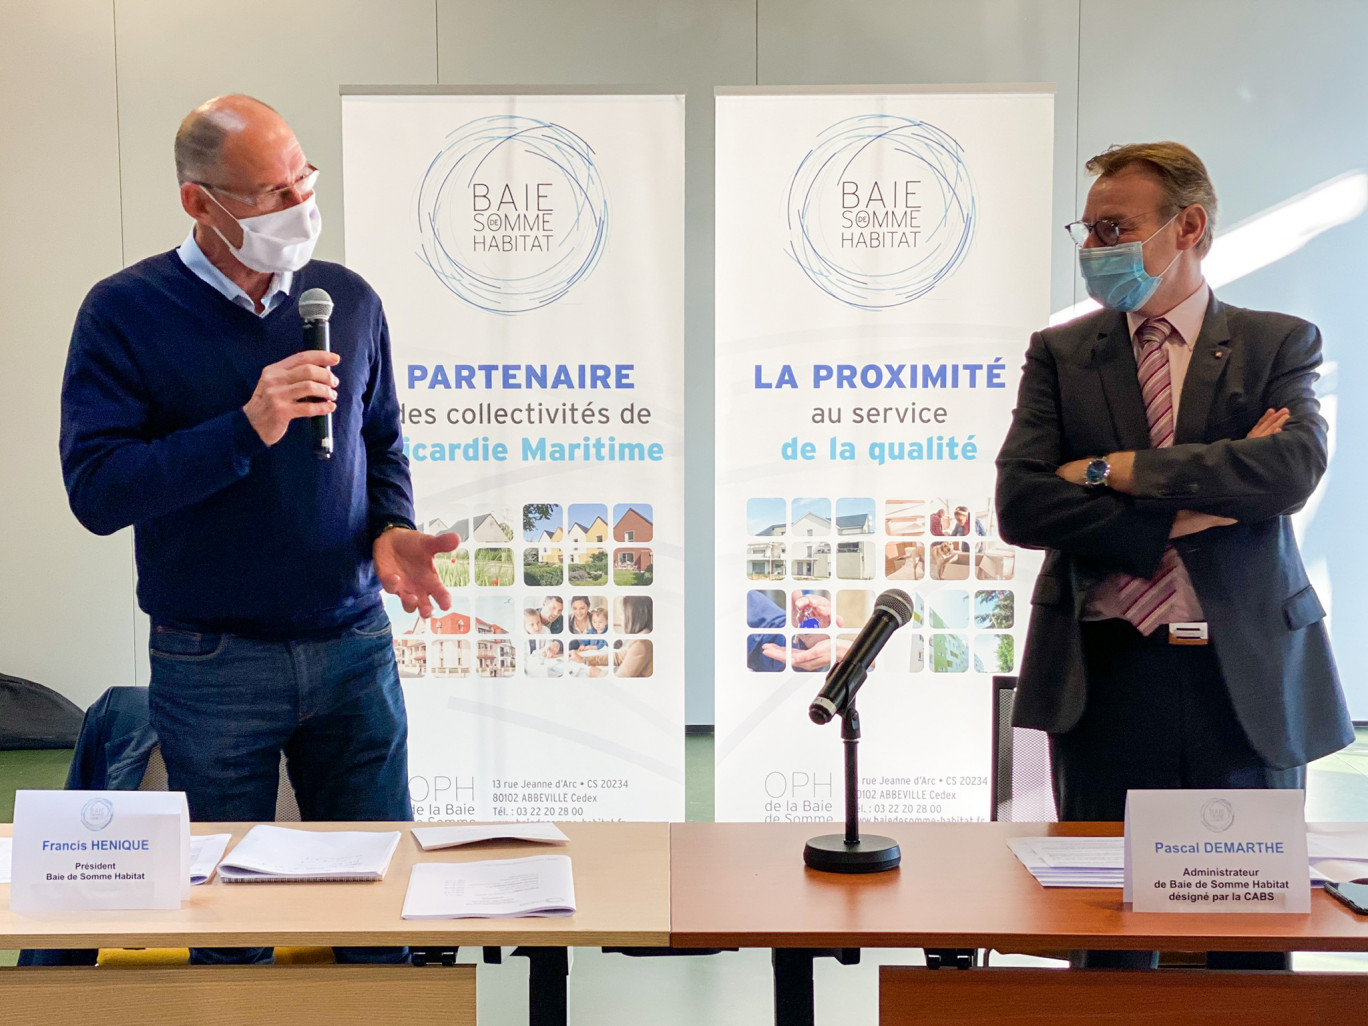 Pascal Demarthe nommé président de Baie de Somme Habitat